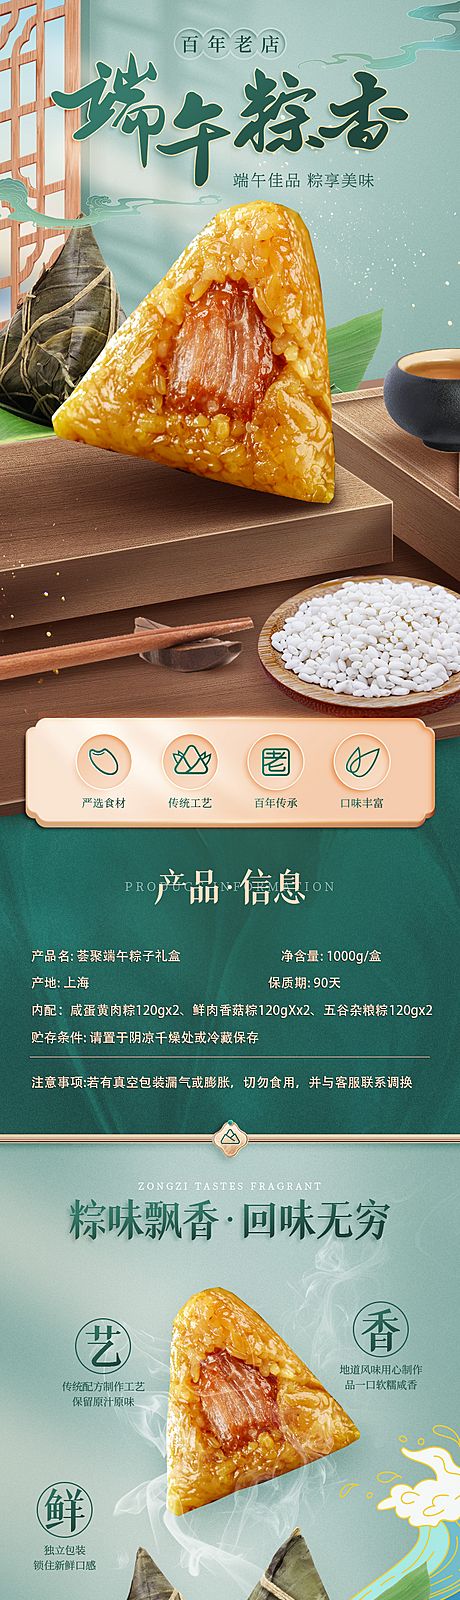 仙图网-粽子端午节美食电商详情页